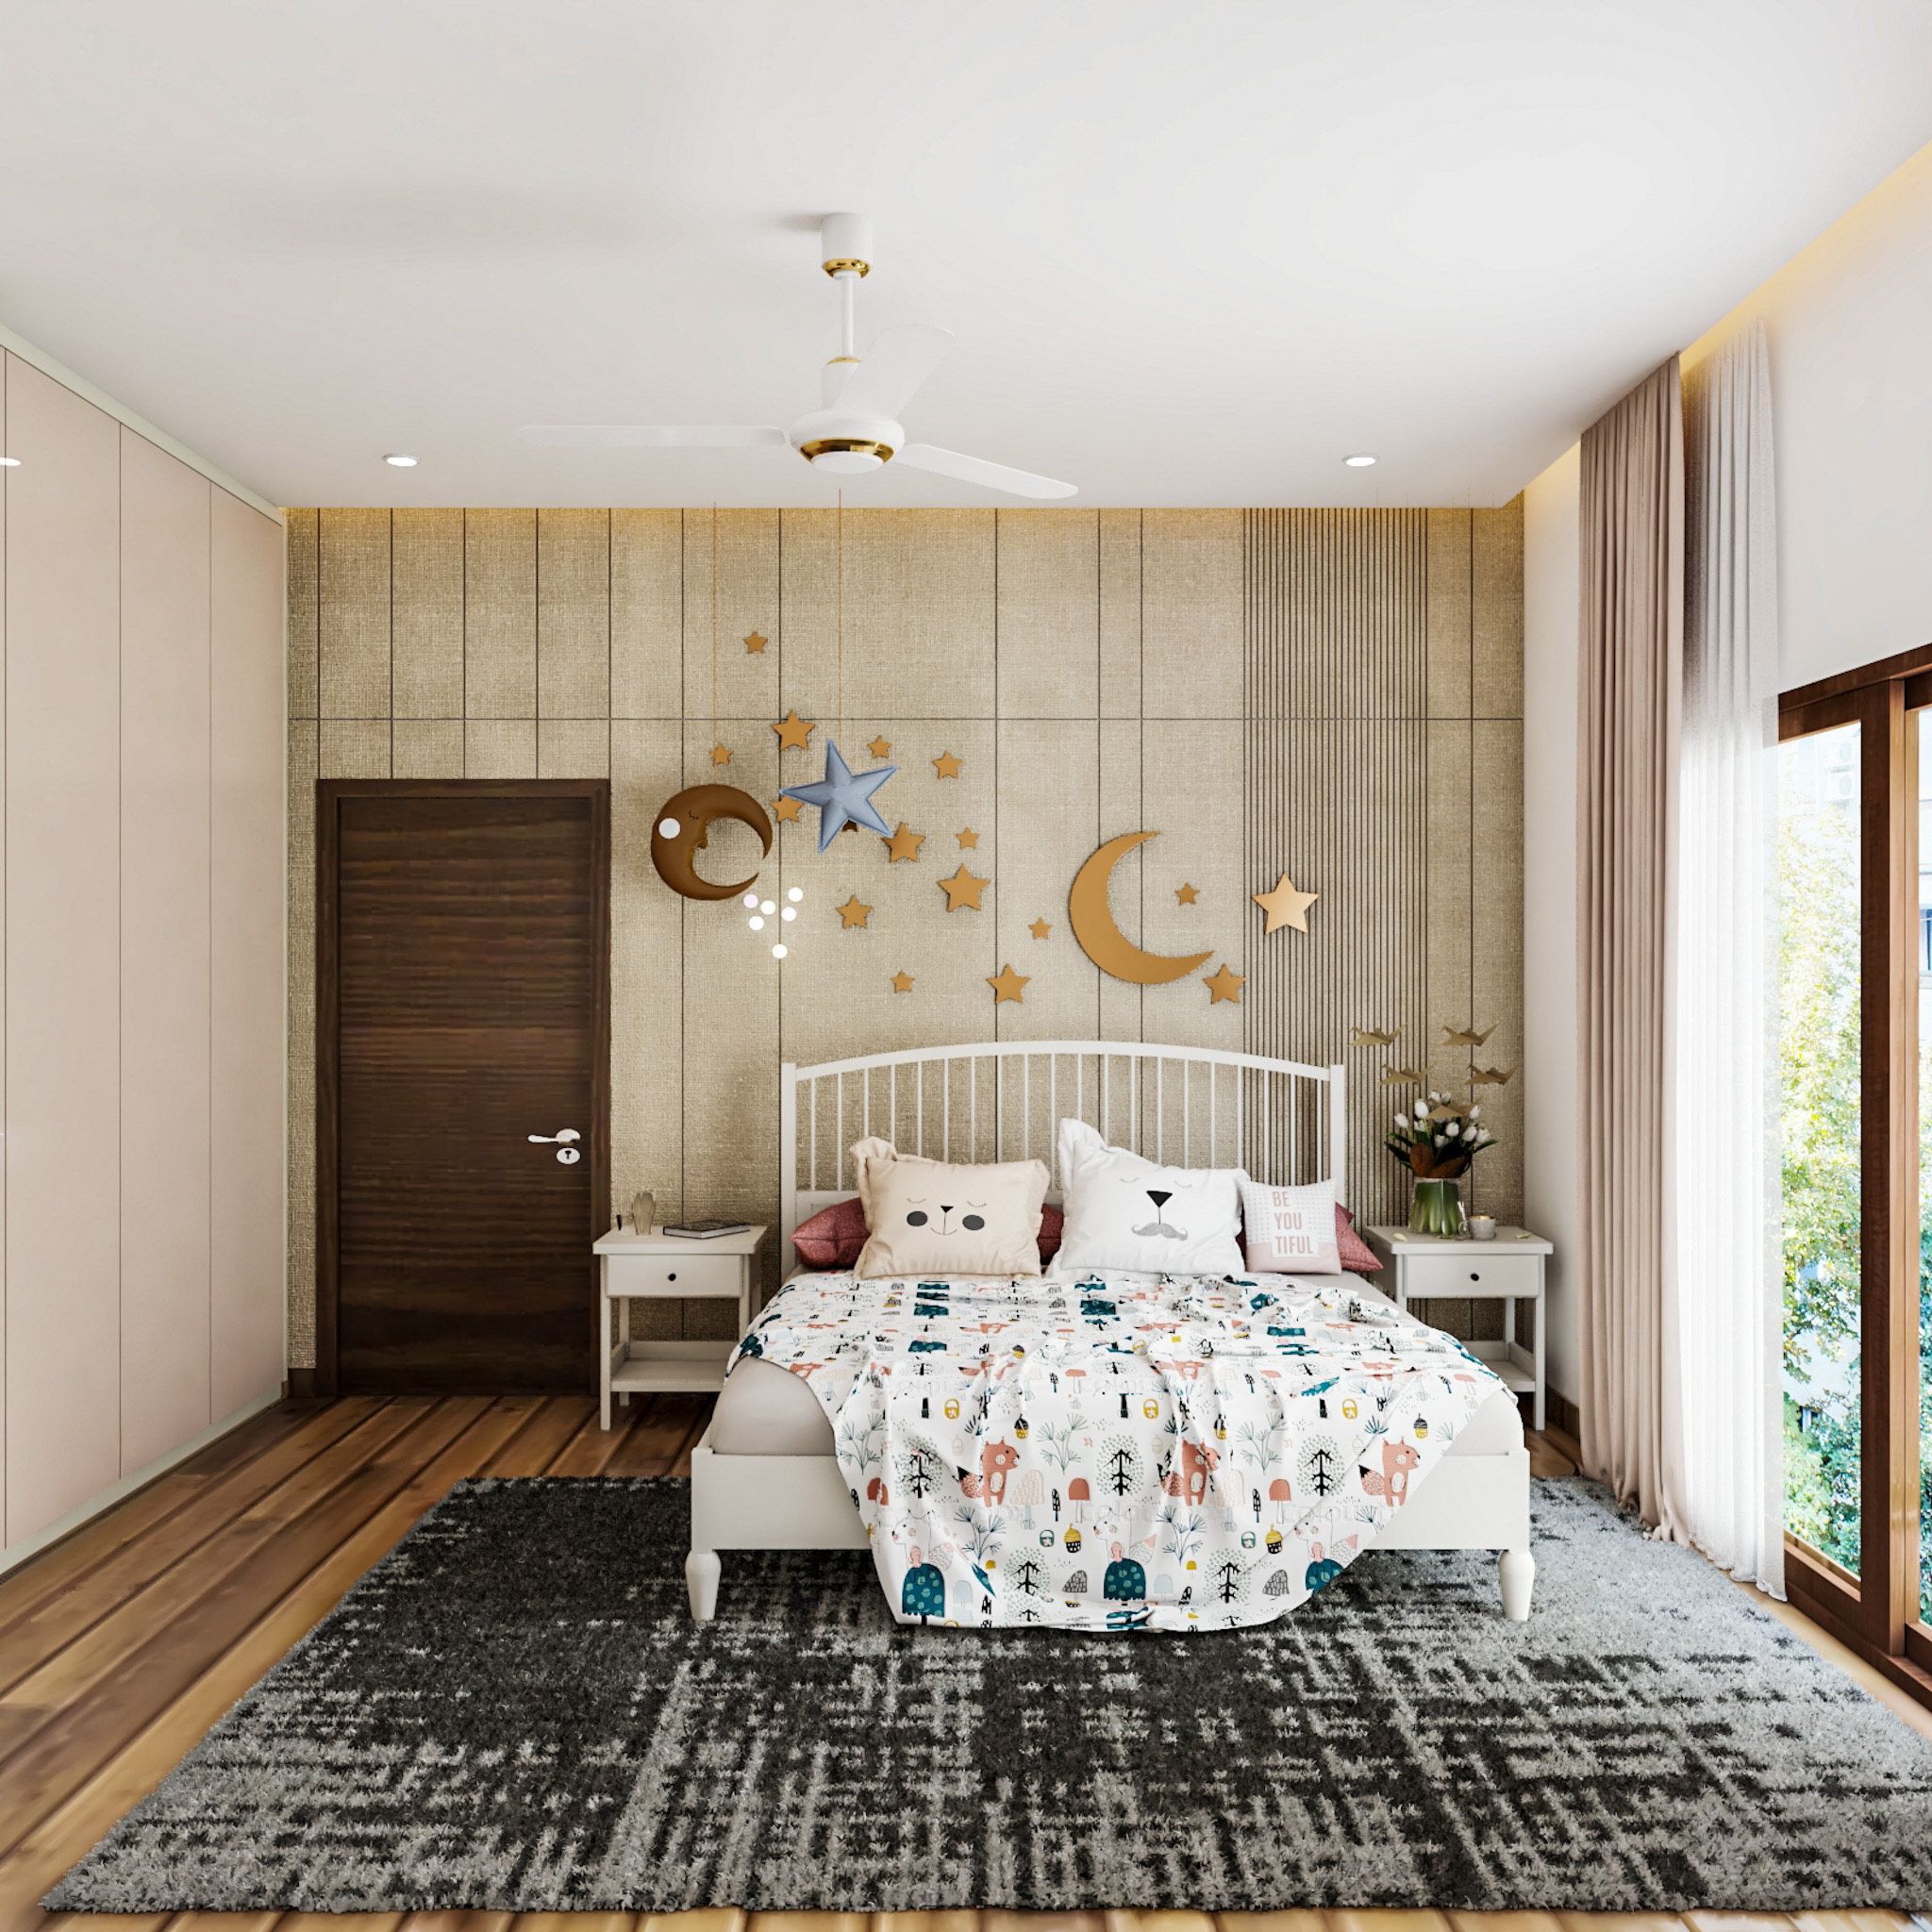 Rectangular False Ceiling Design For Modern Bedrooms